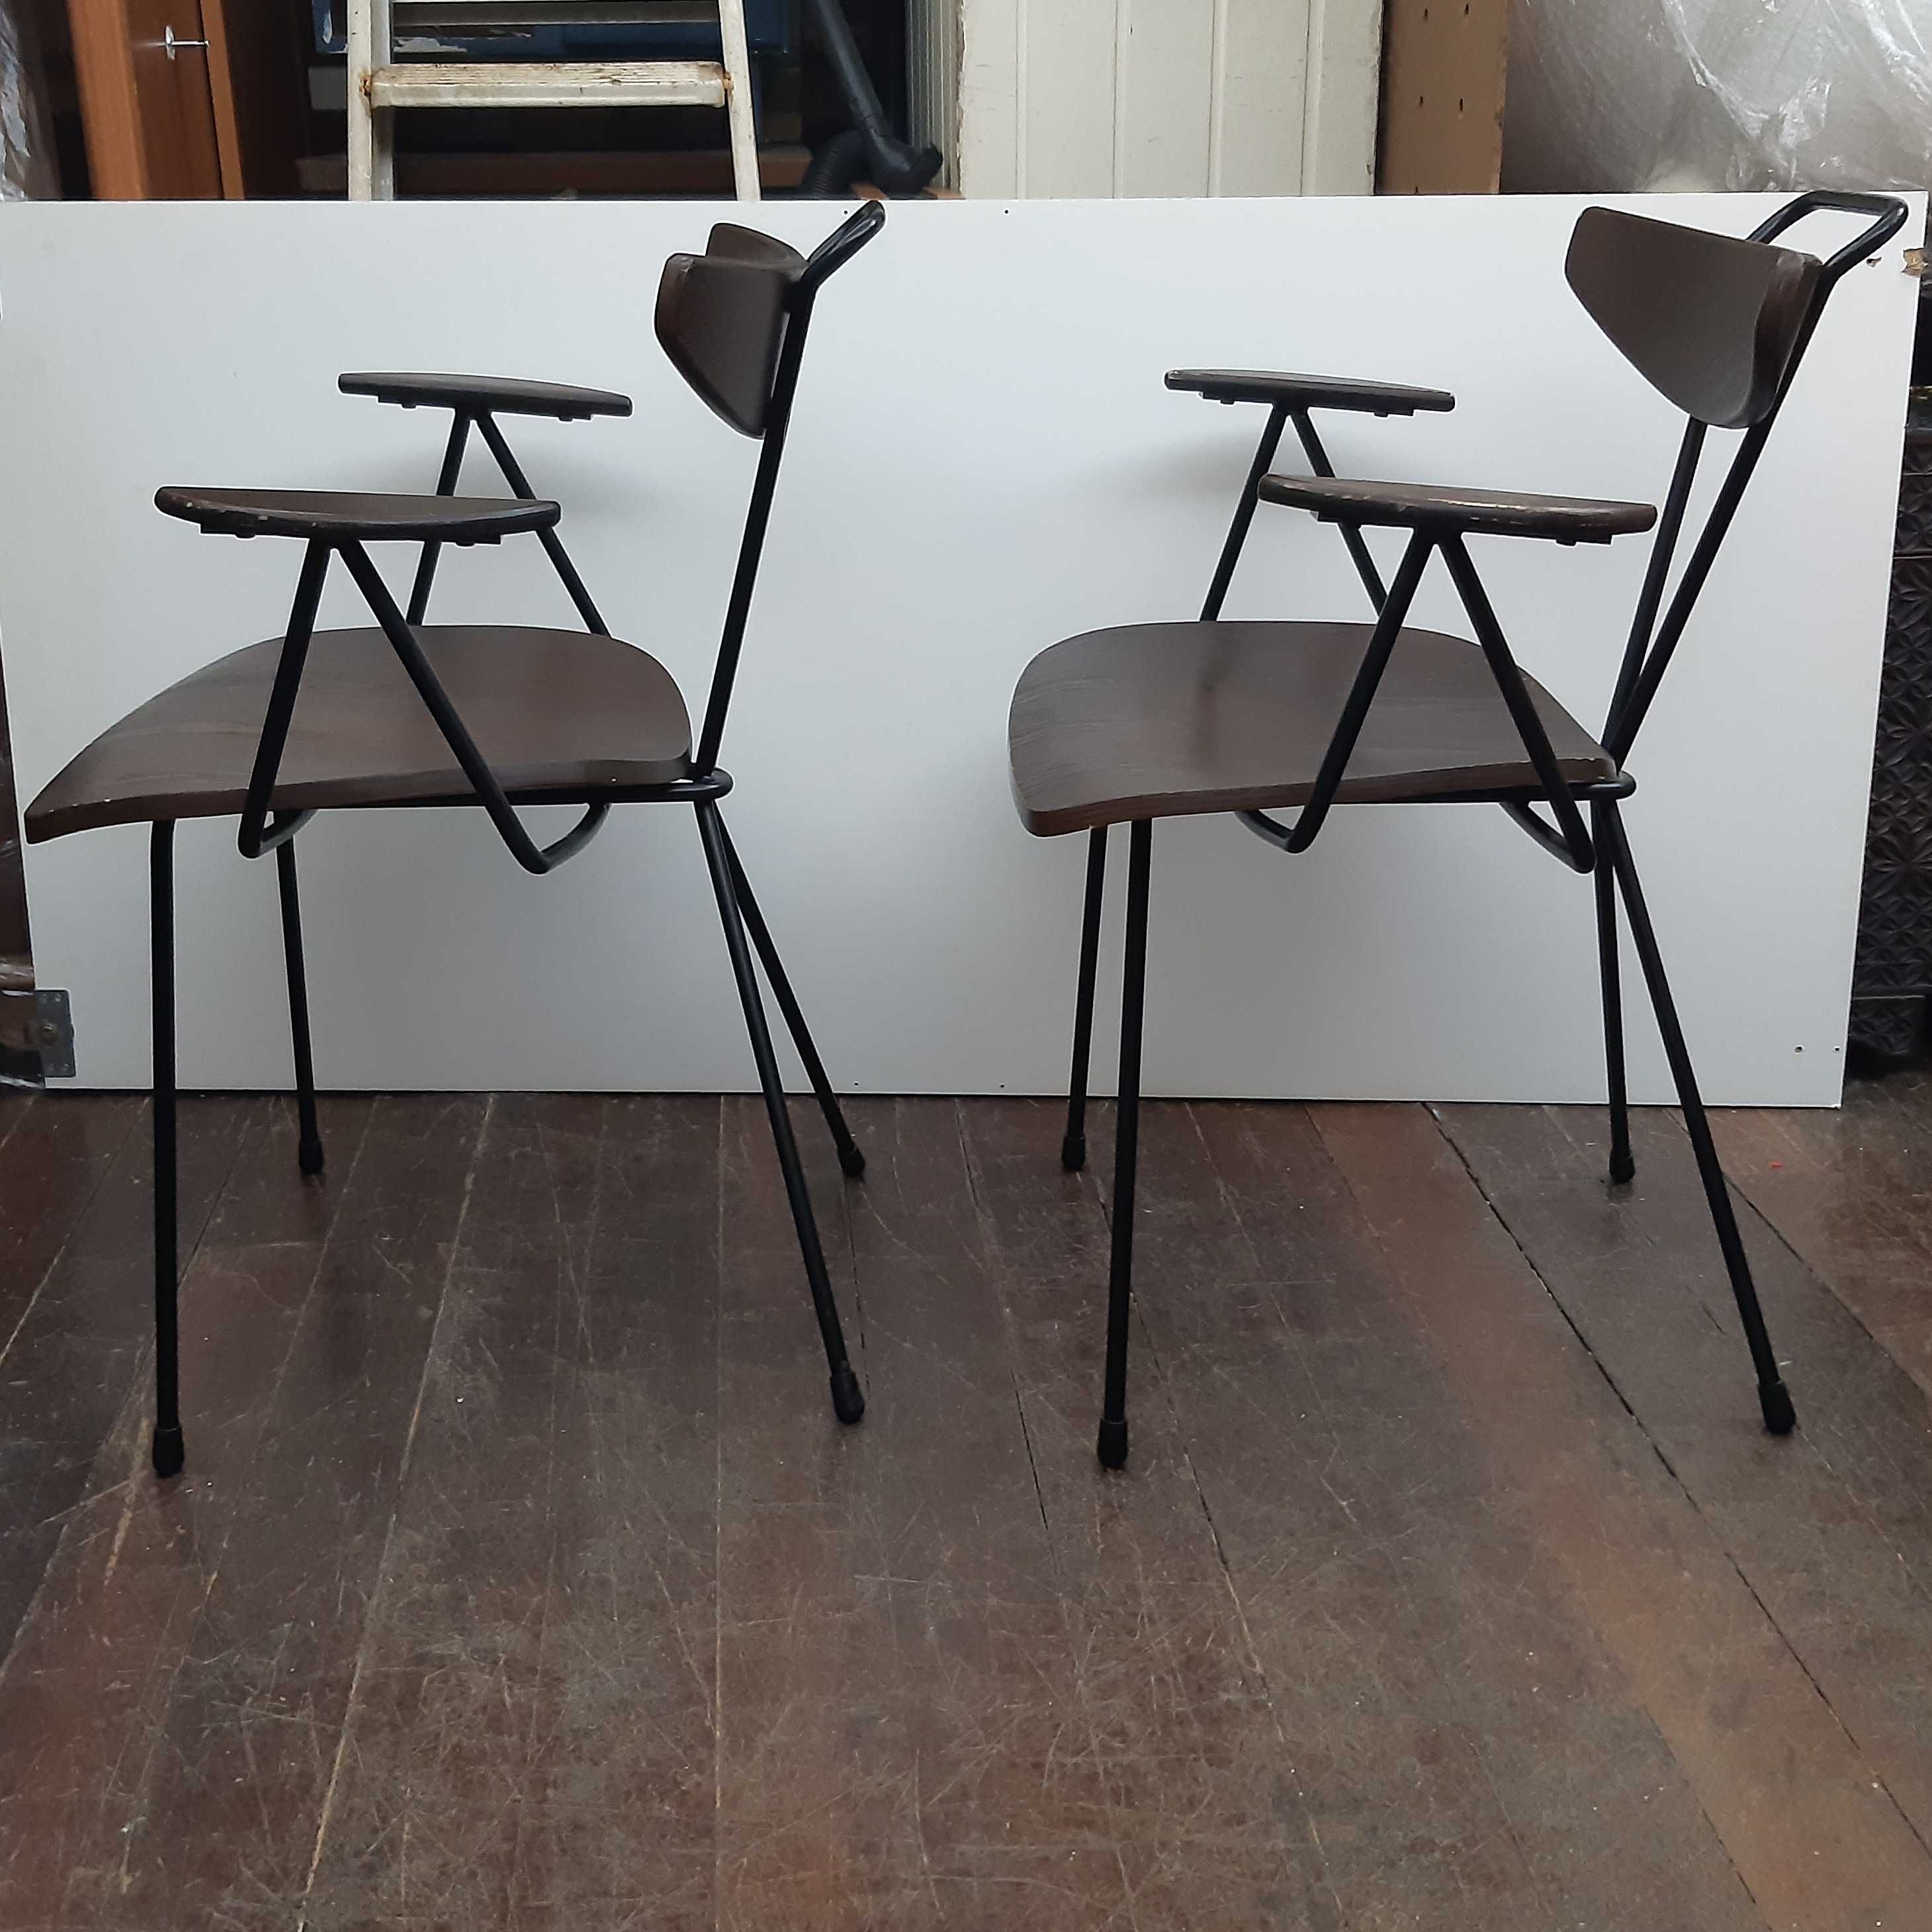 Duas Boas Cadeiras c/ Braços Design Nórdico Ferro Madeira